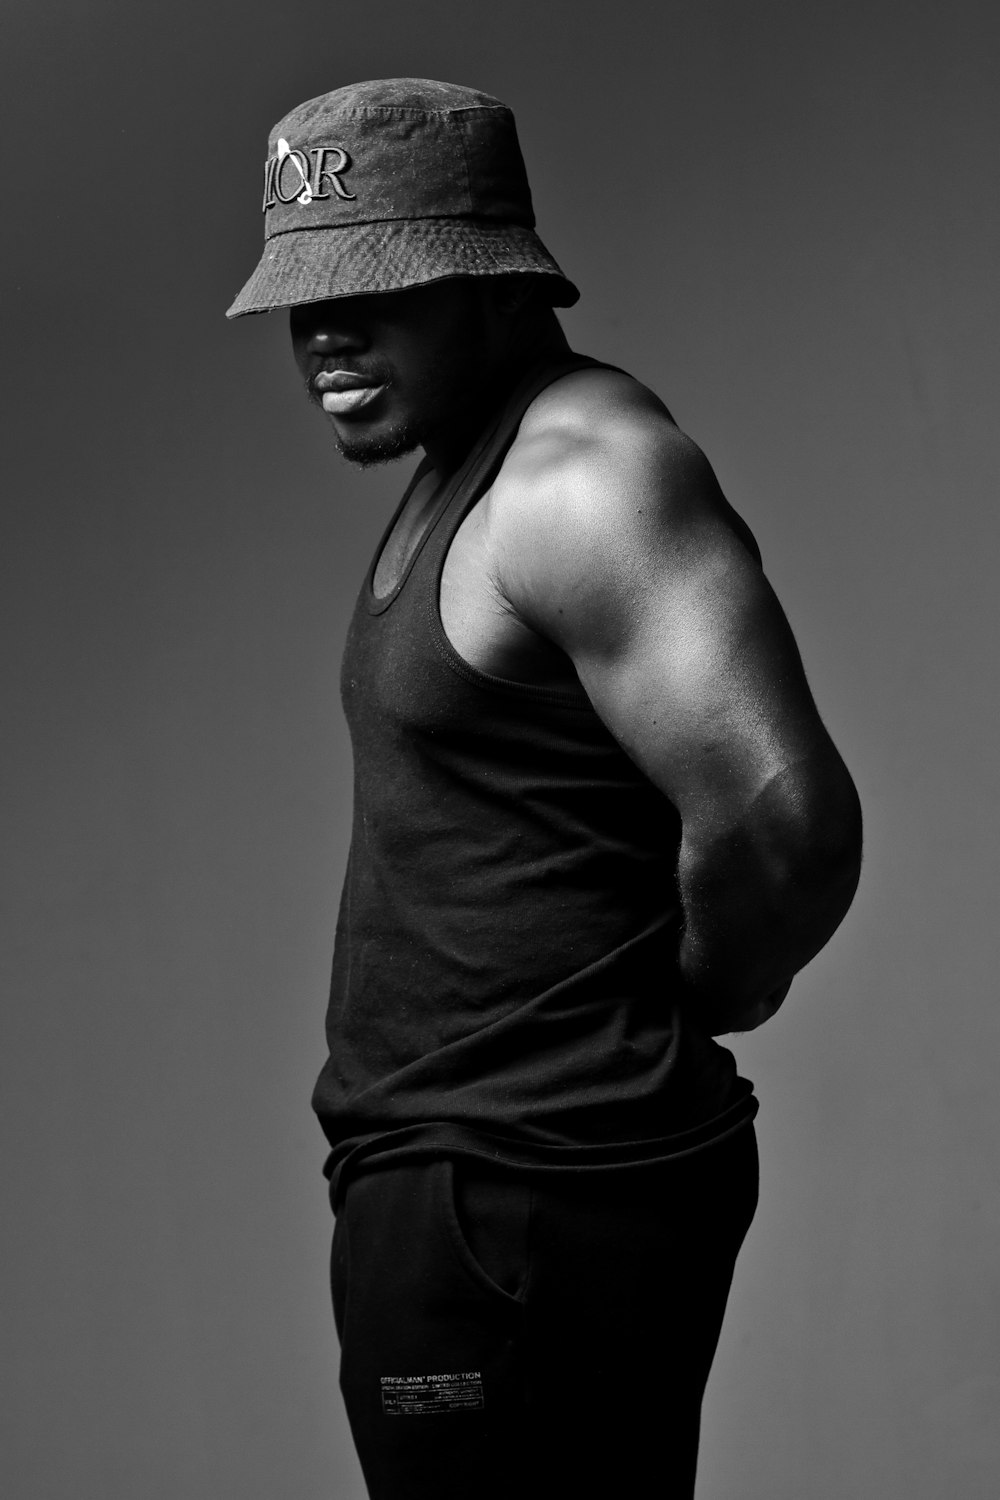 Ein Mann mit Hut steht auf einem Schwarz-Weiß-Foto